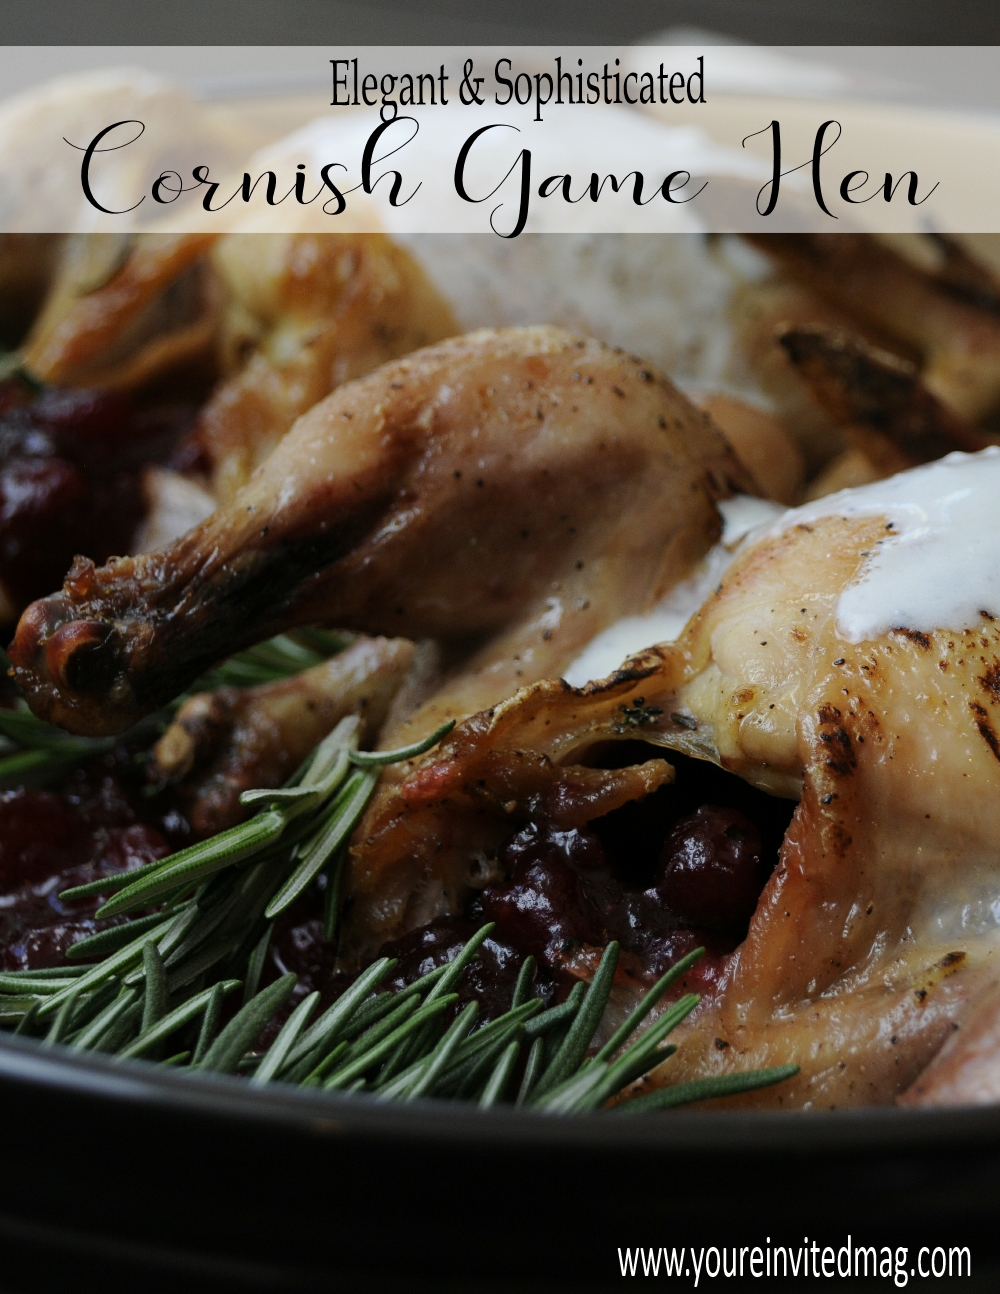 Cornish Game Hen